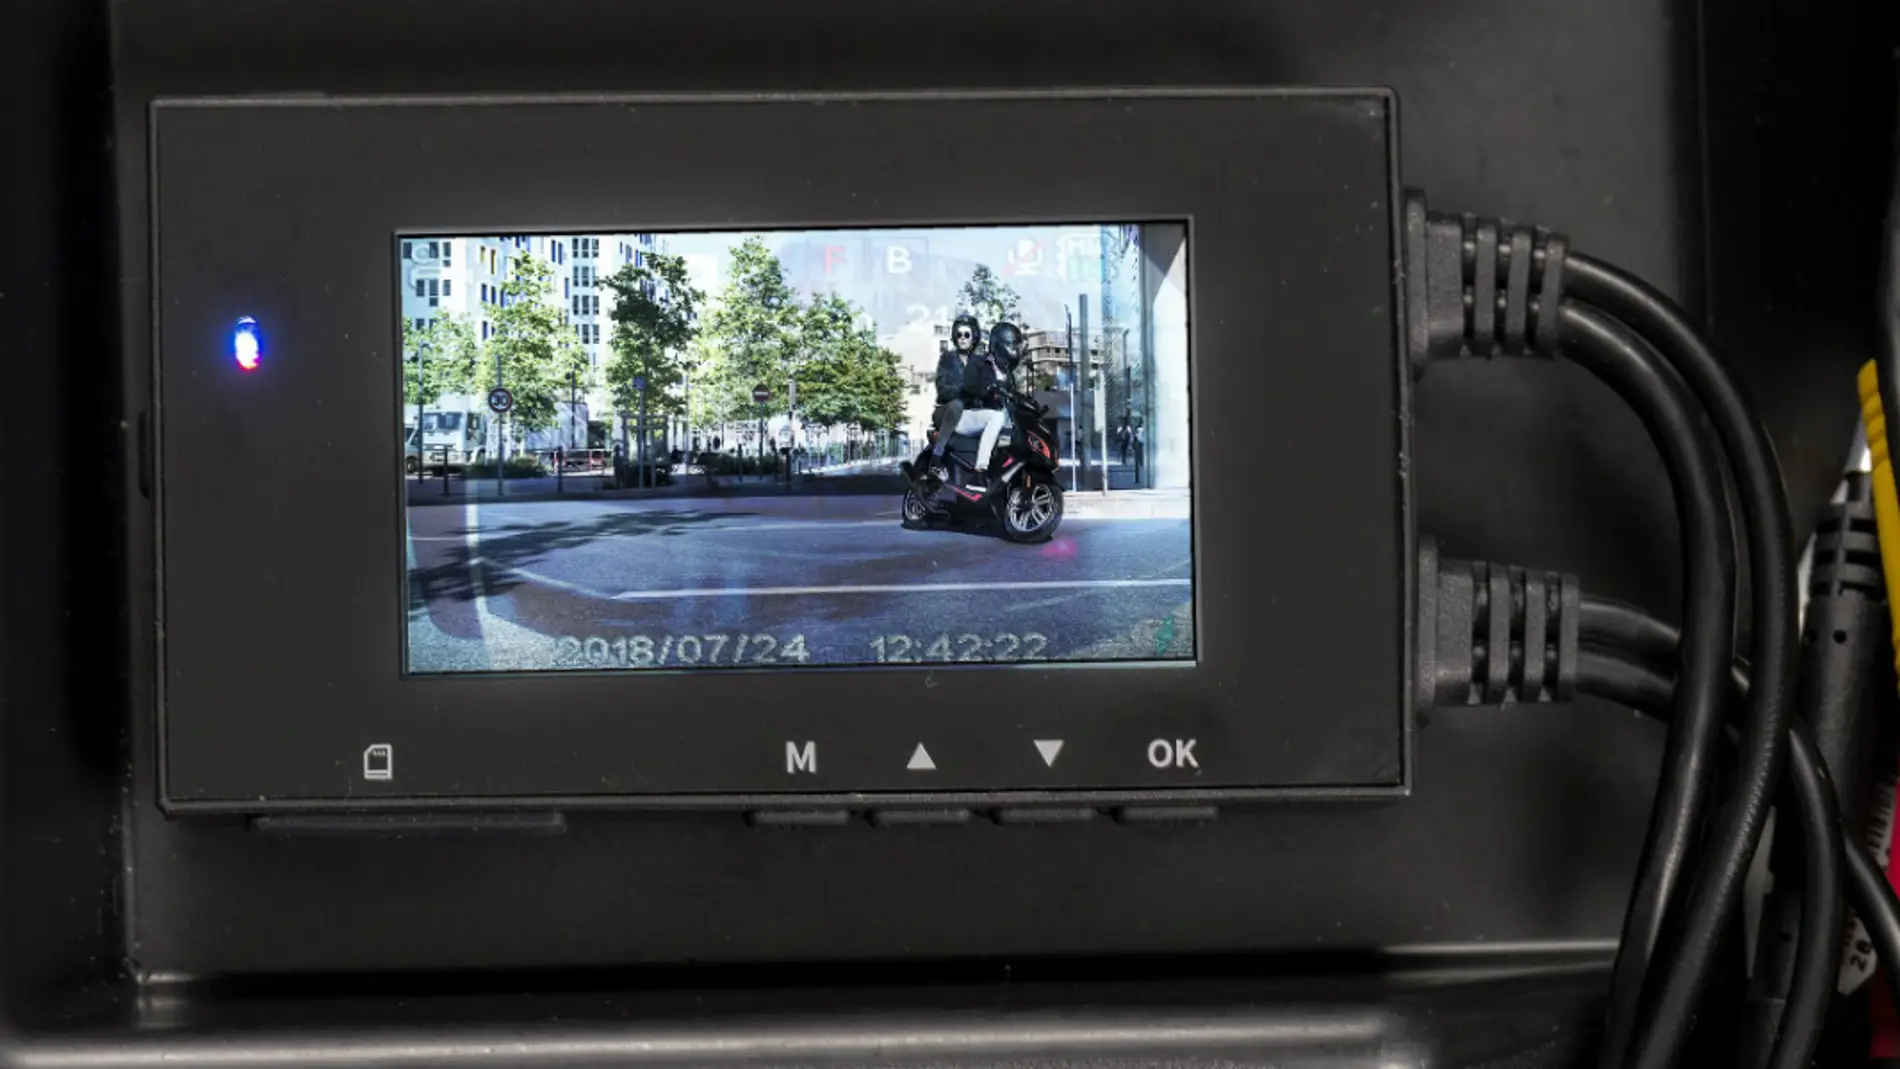 Podría instalar una cámara en mi coche para grabar accidentes